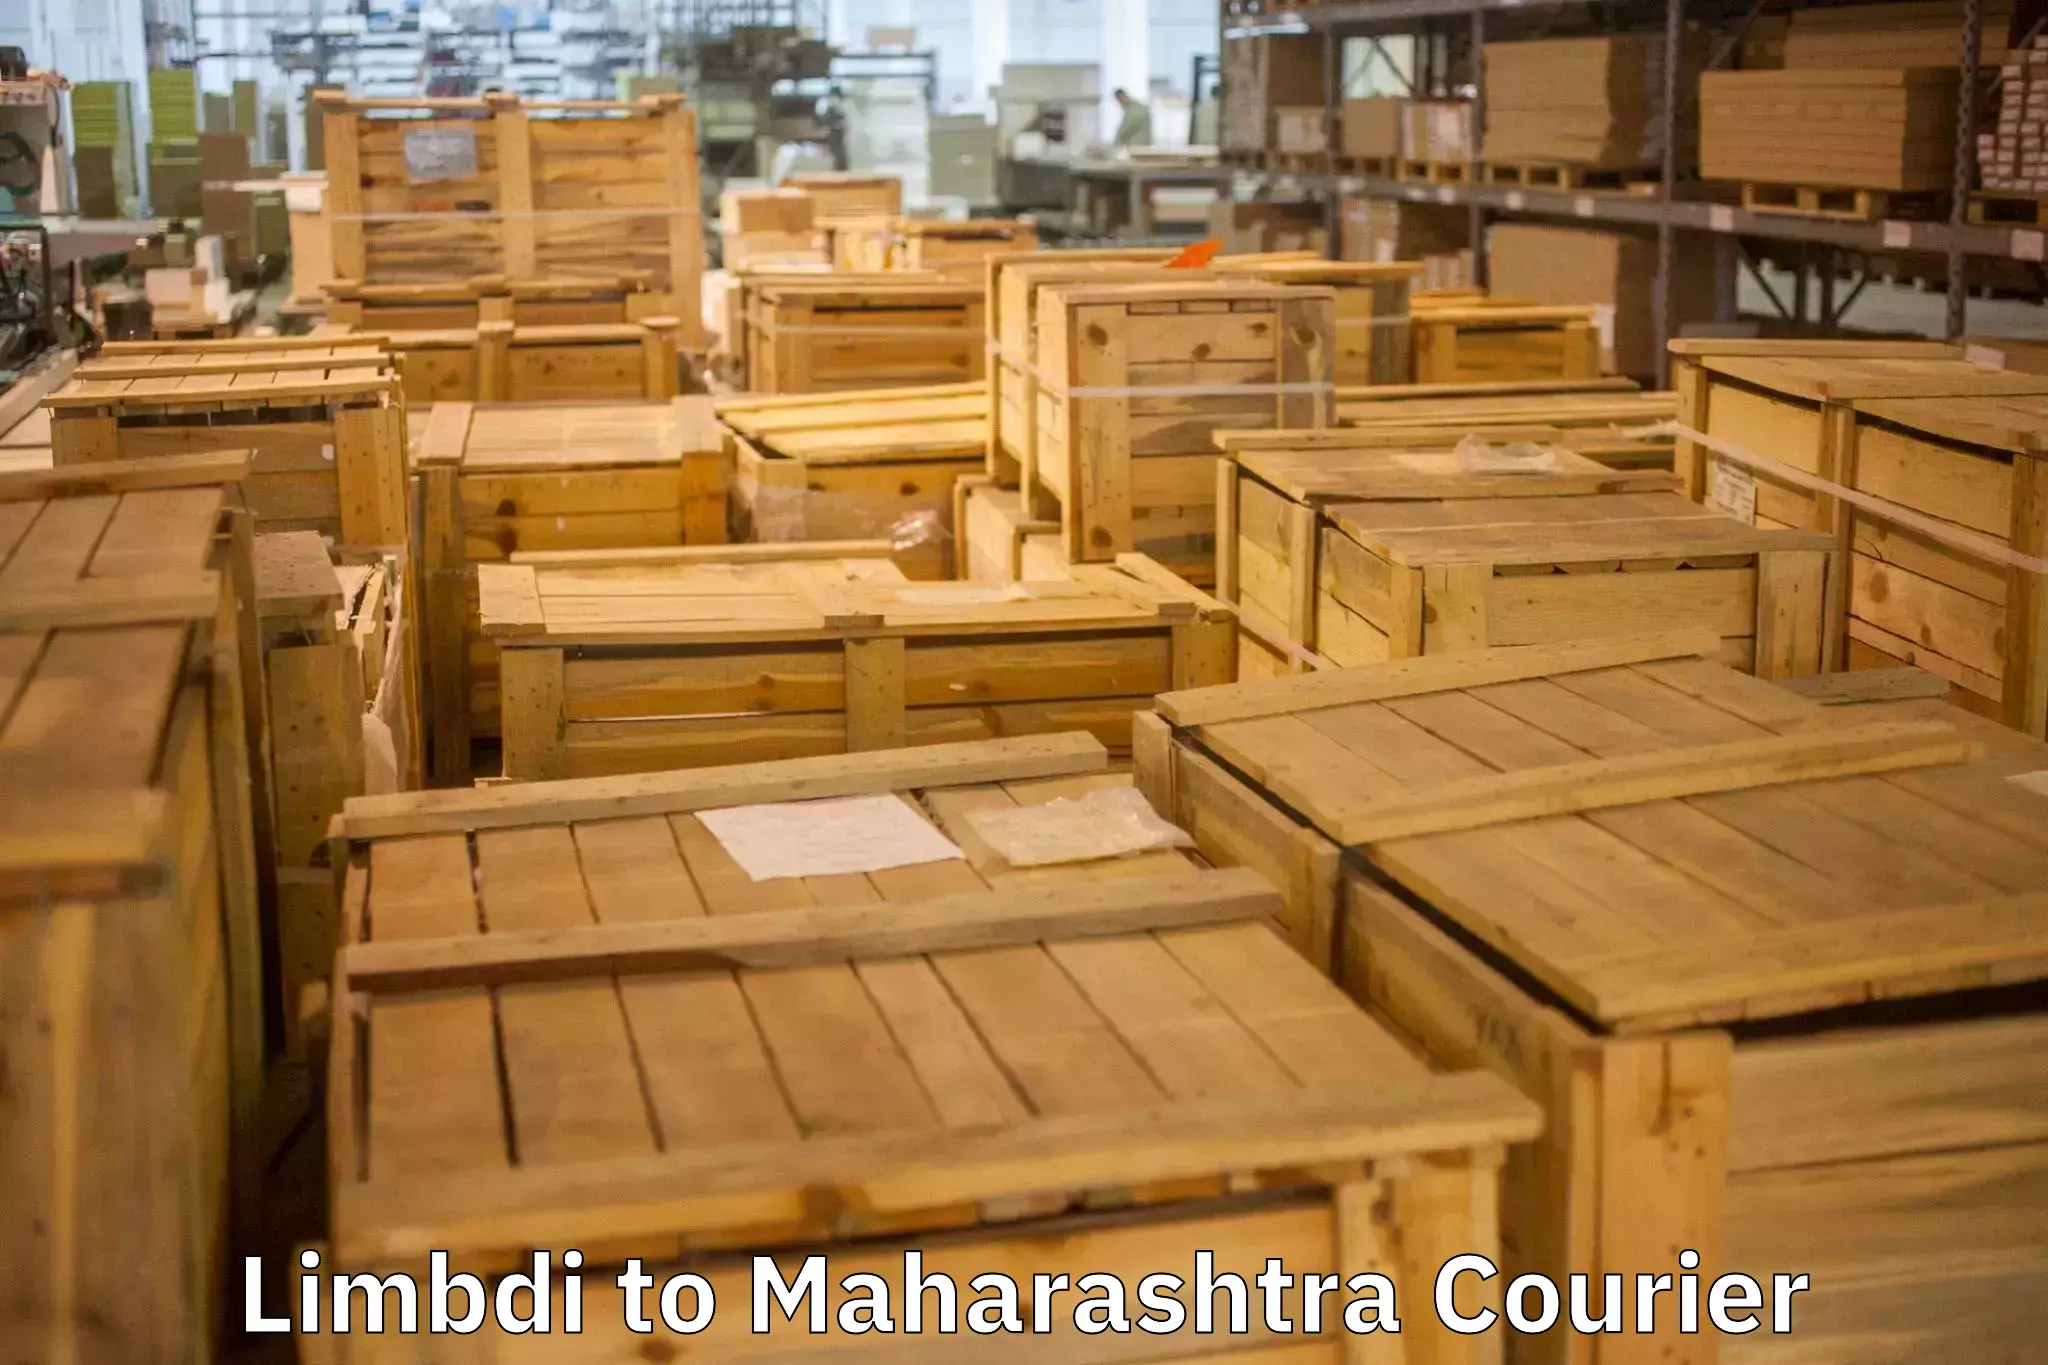 Customized relocation services Limbdi to Maharashtra